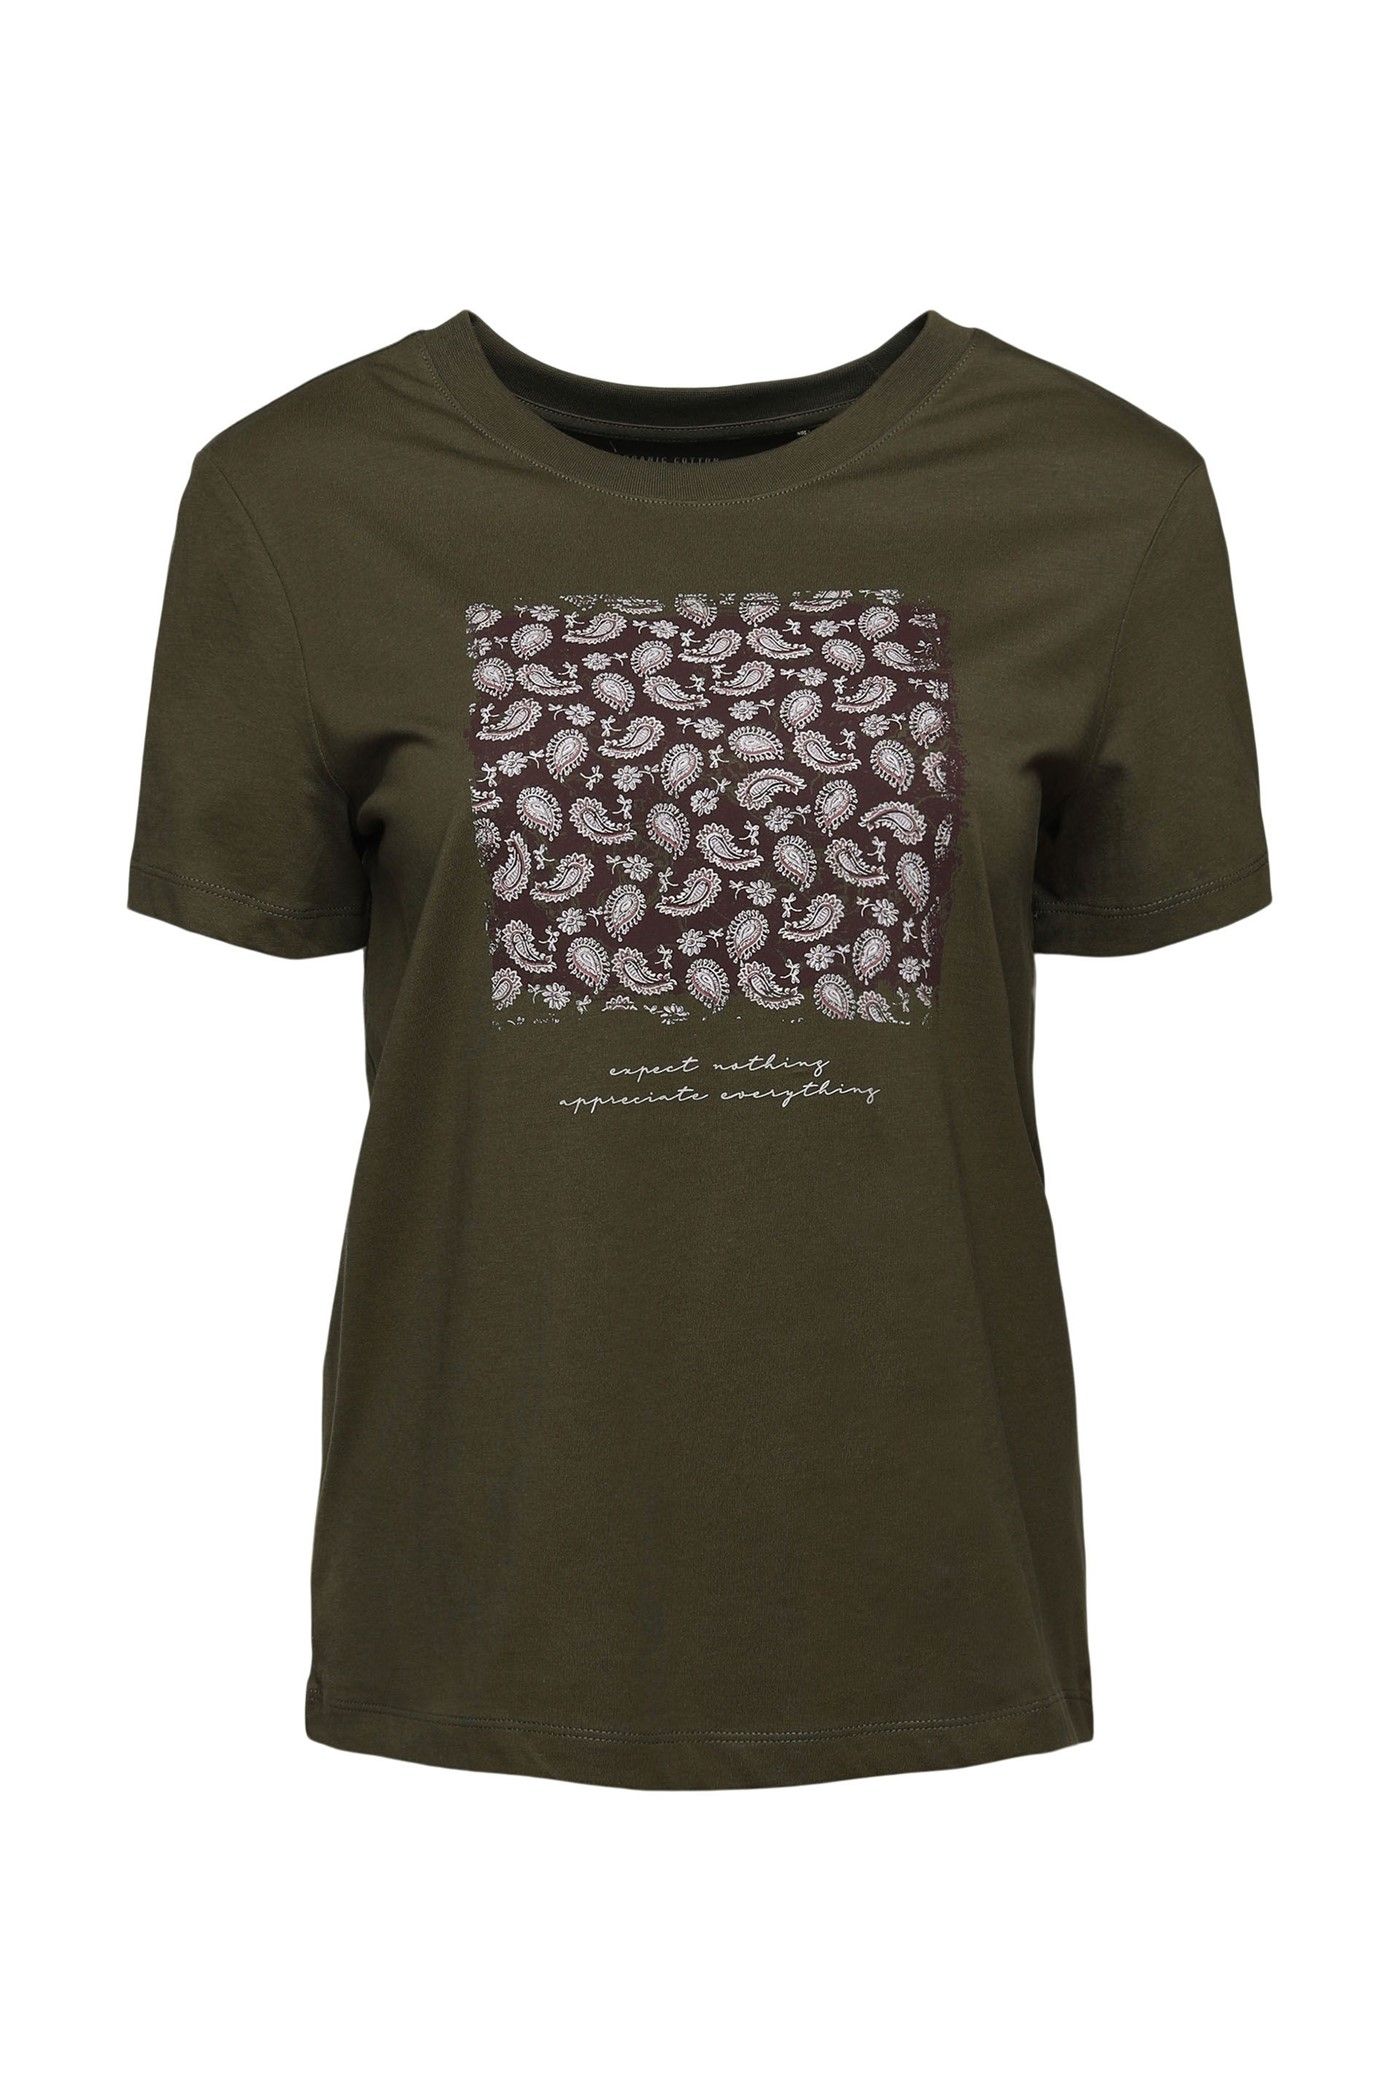 zeker kunst Bakken Esprit t-shirt met print dark khaki 091EE1K345 355